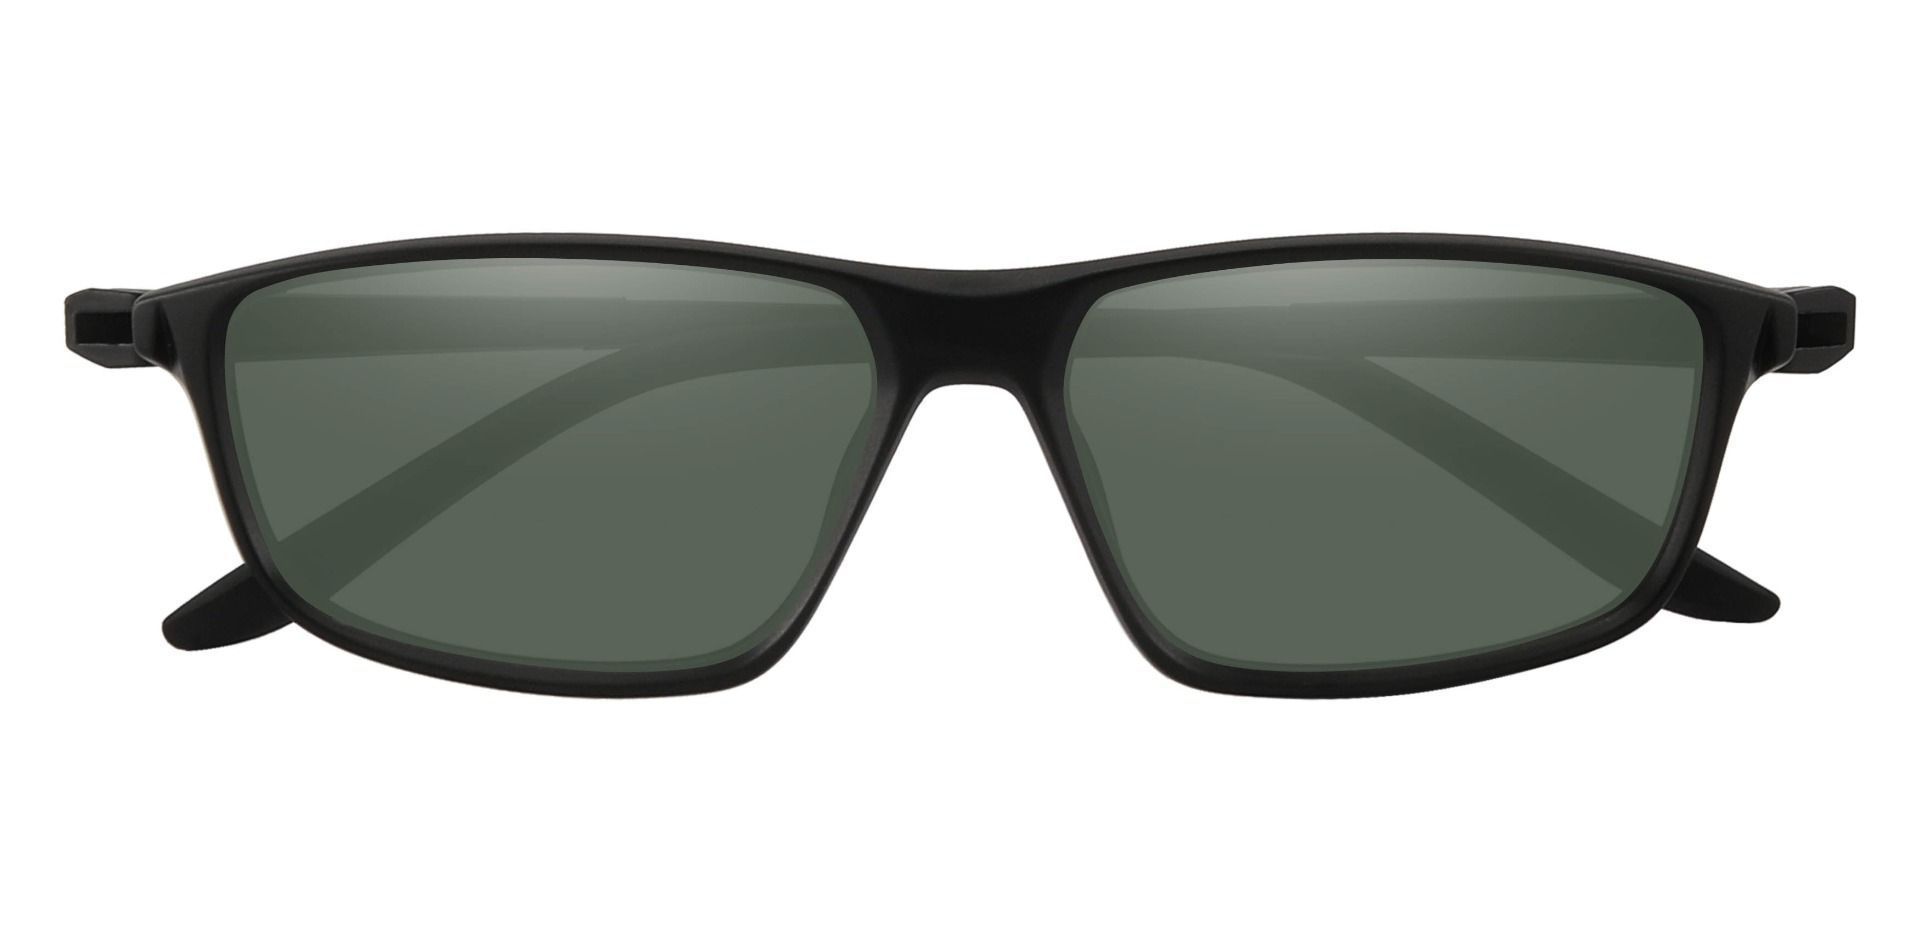 Mark Rectangle Prescription Sunglasses - Black Frame With Green Lenses